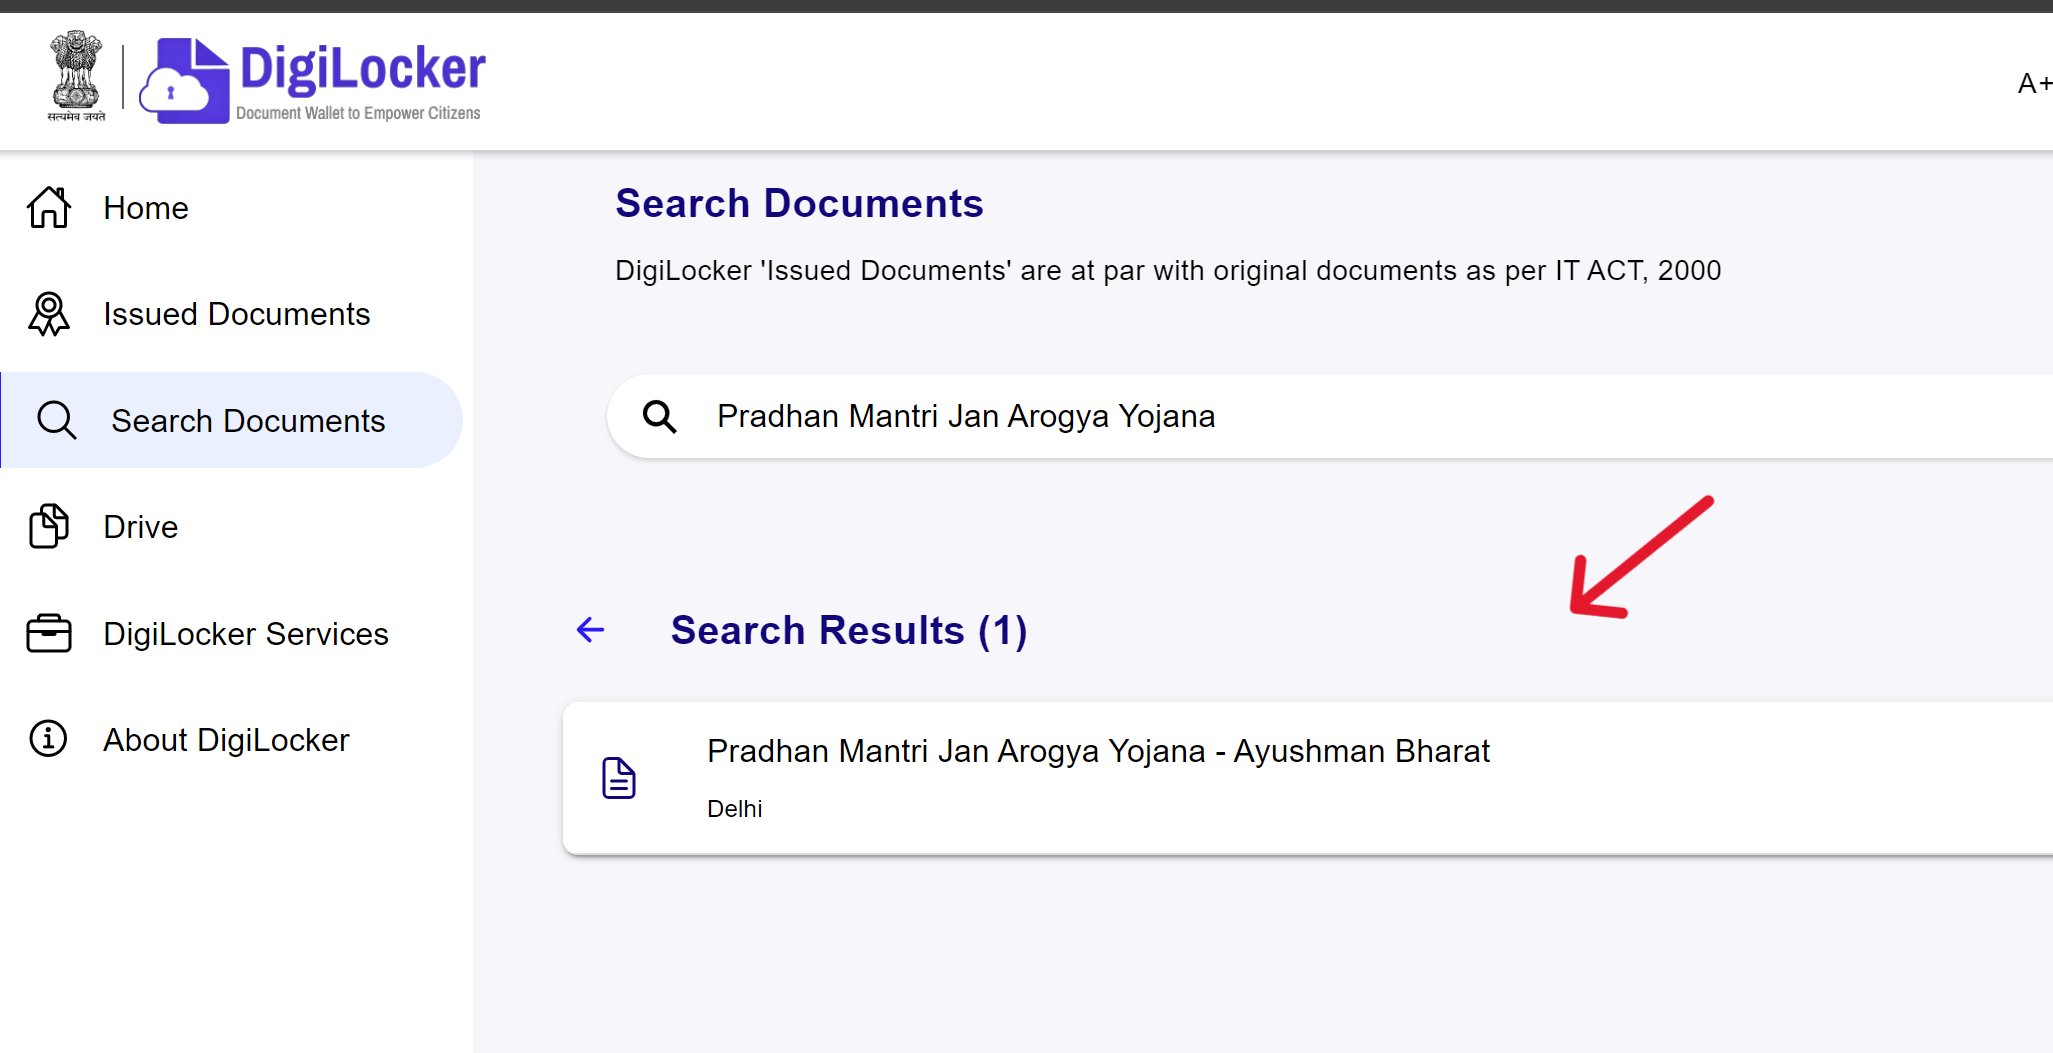 Search for Pradhan Mantri Jan Arogya Yojana